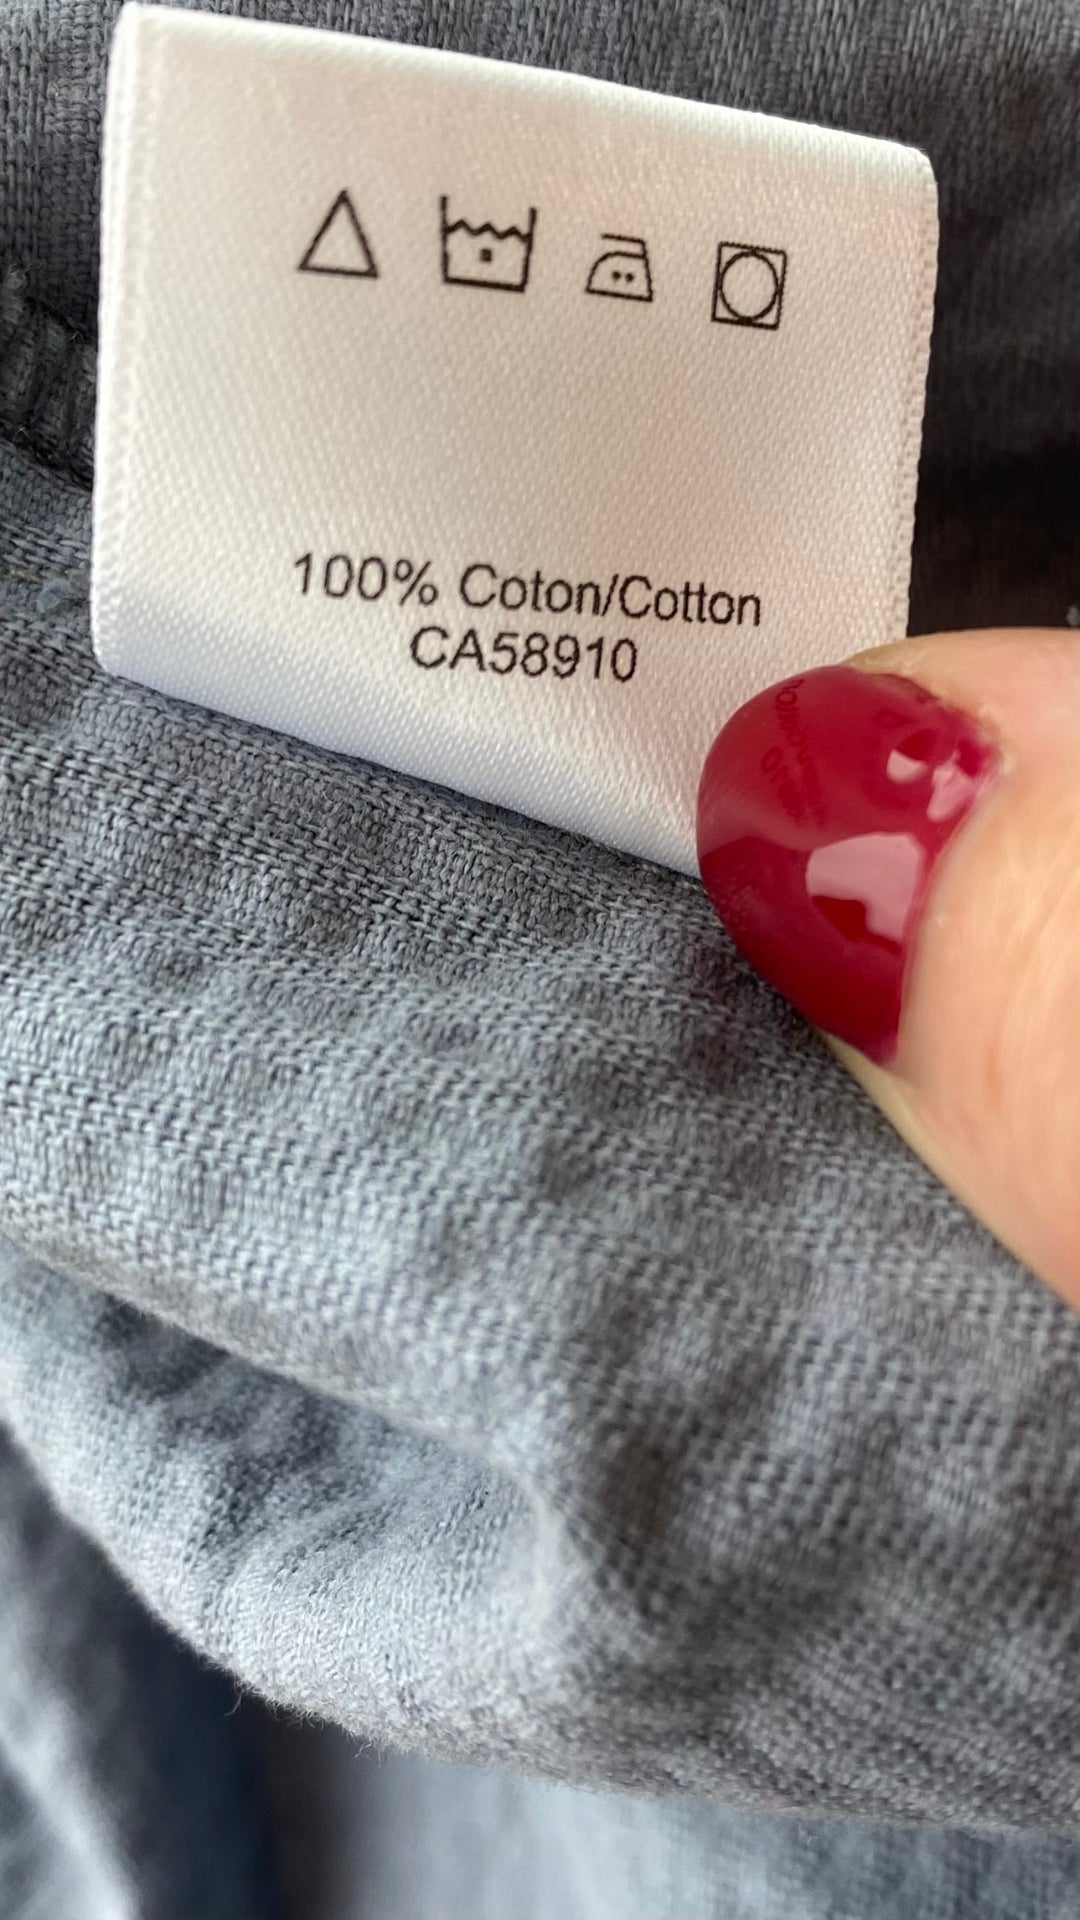 Jupe midi boutonnée gris-bleu en velours côtelé Essentiels &Co, taille small (xs). Vue de l'étiquette d'entretien et composition.